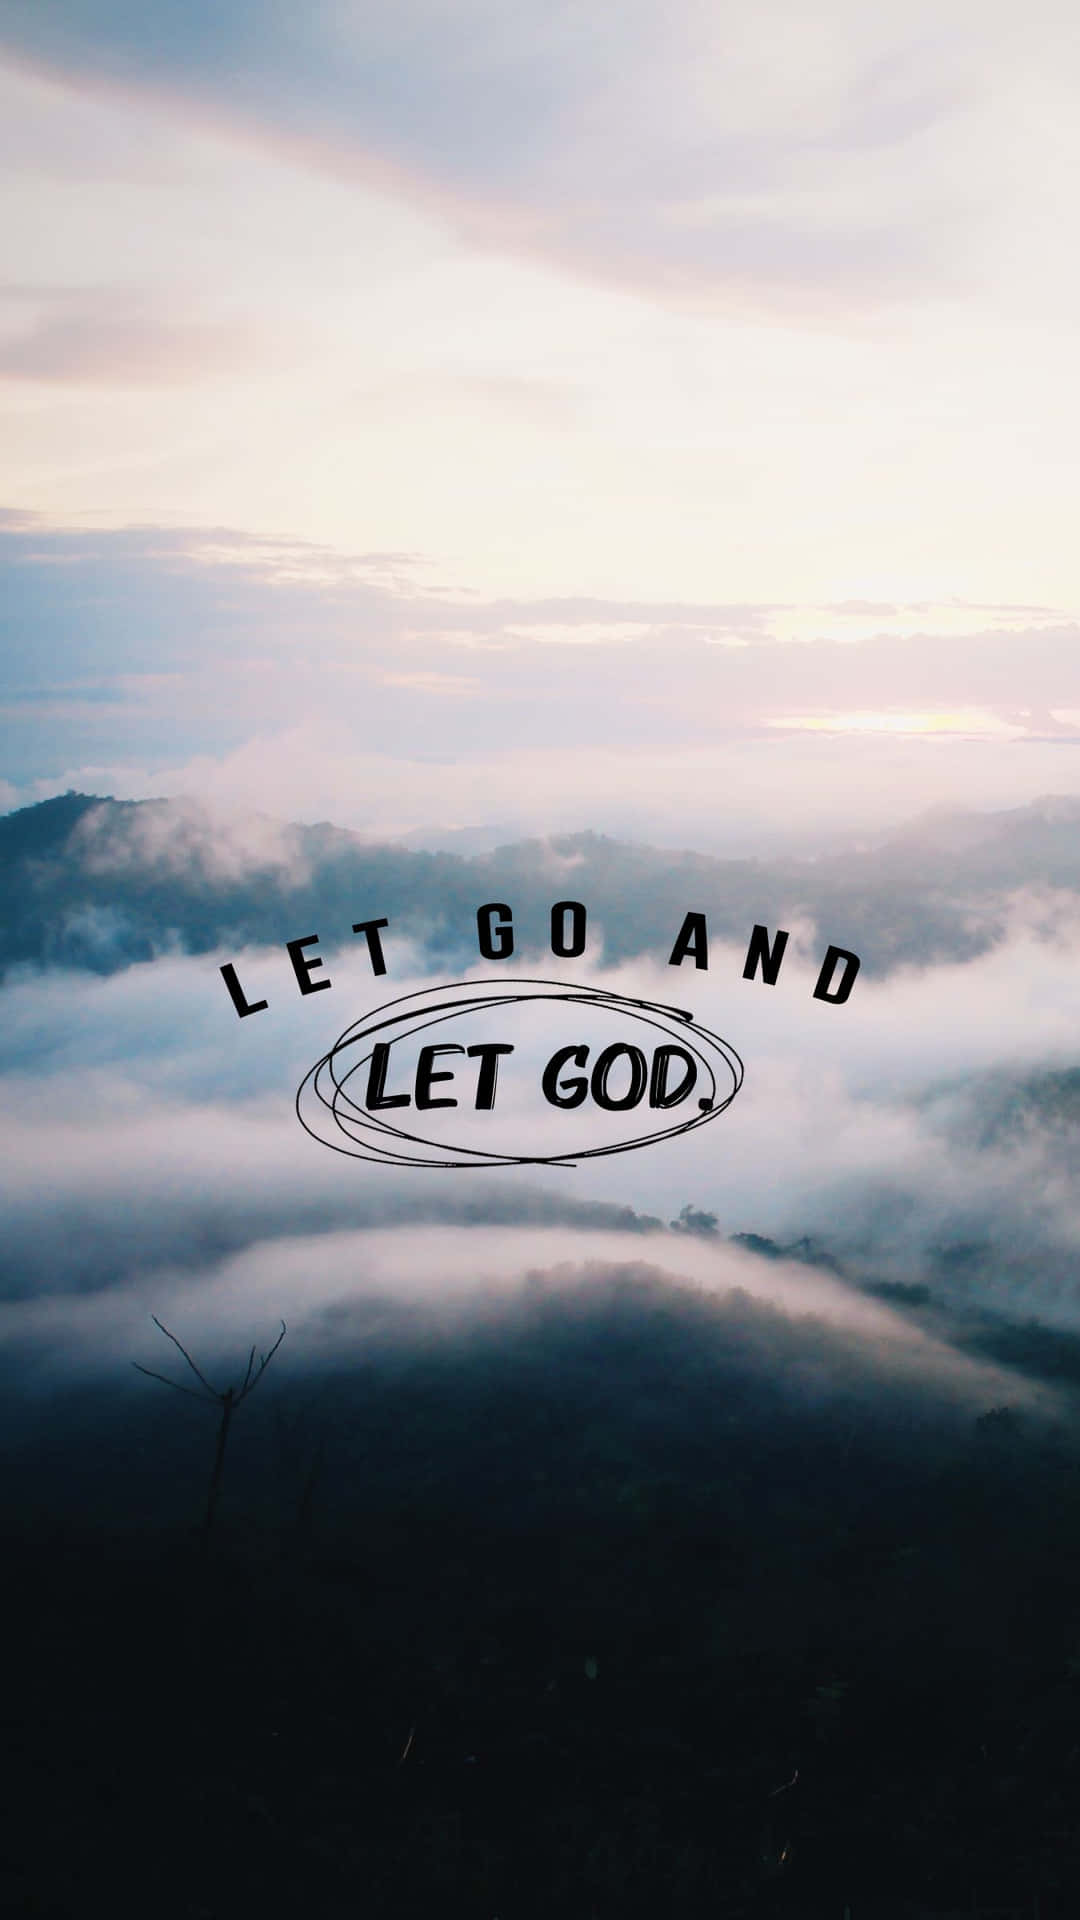 Let go and let God  Let go and let god Let god God